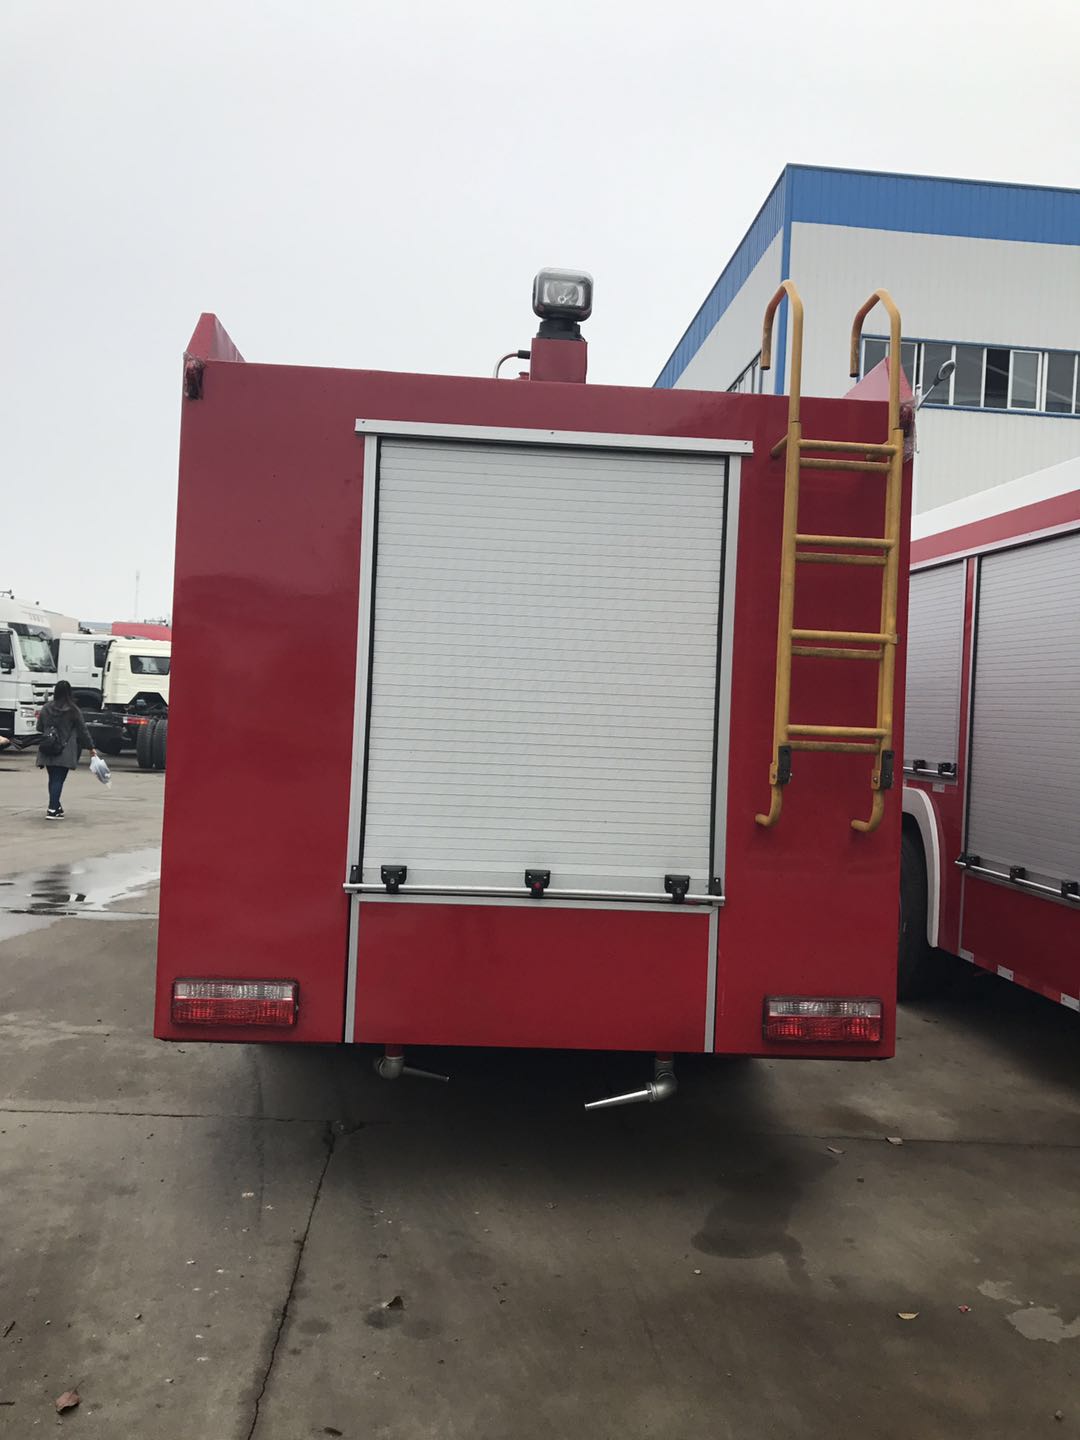 SINOTRUK HOWO New 4X2 Water Foam Fire Fighting Truck for Sale